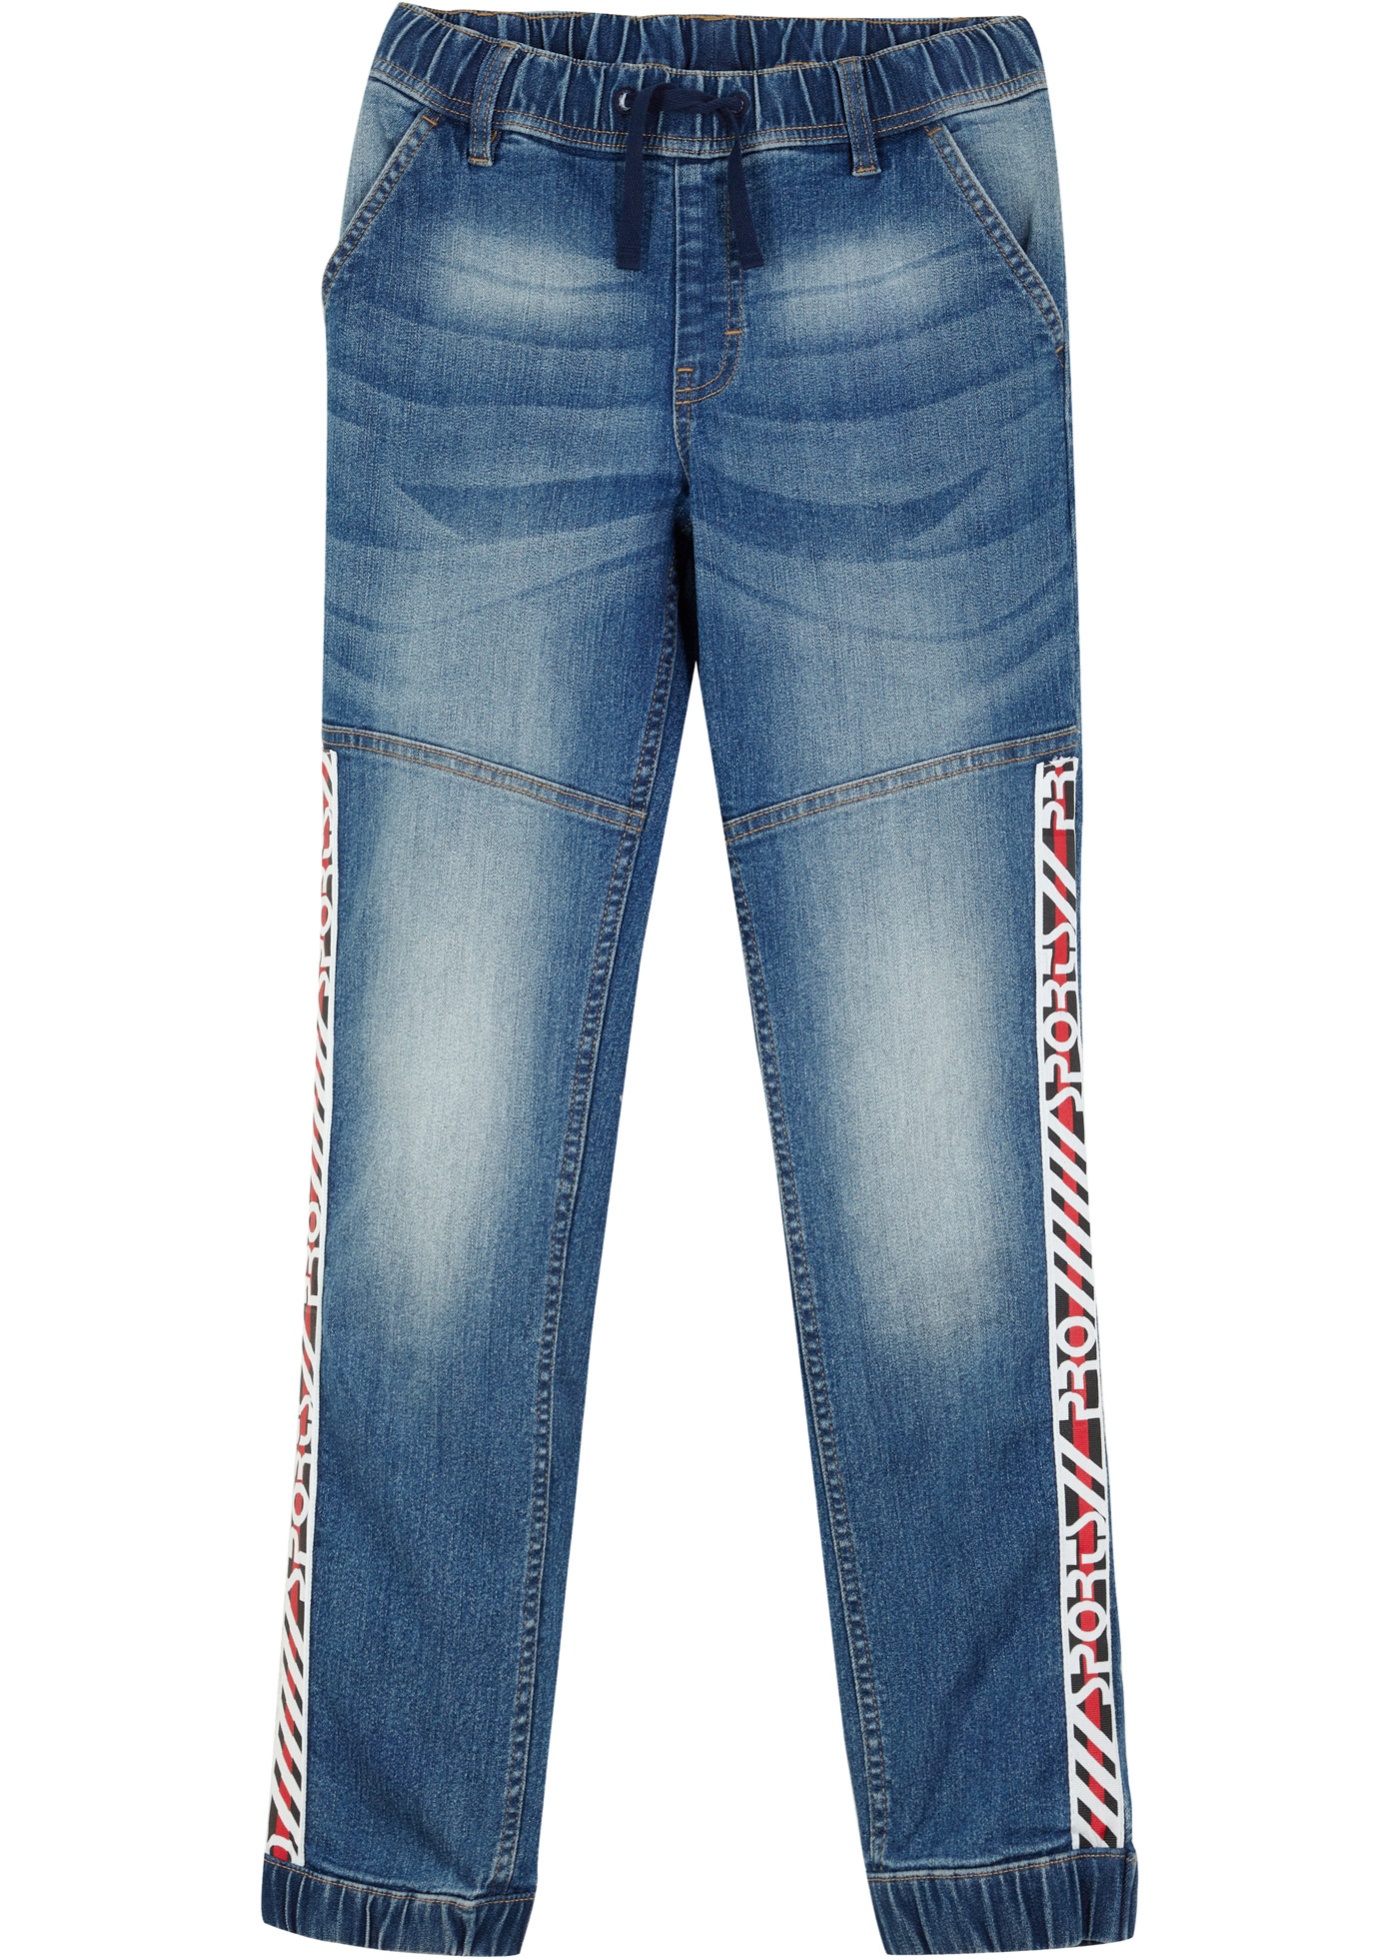 Jeans in felpa con fasce sportive, slim fit (Blu) - John Baner JEANSWEAR